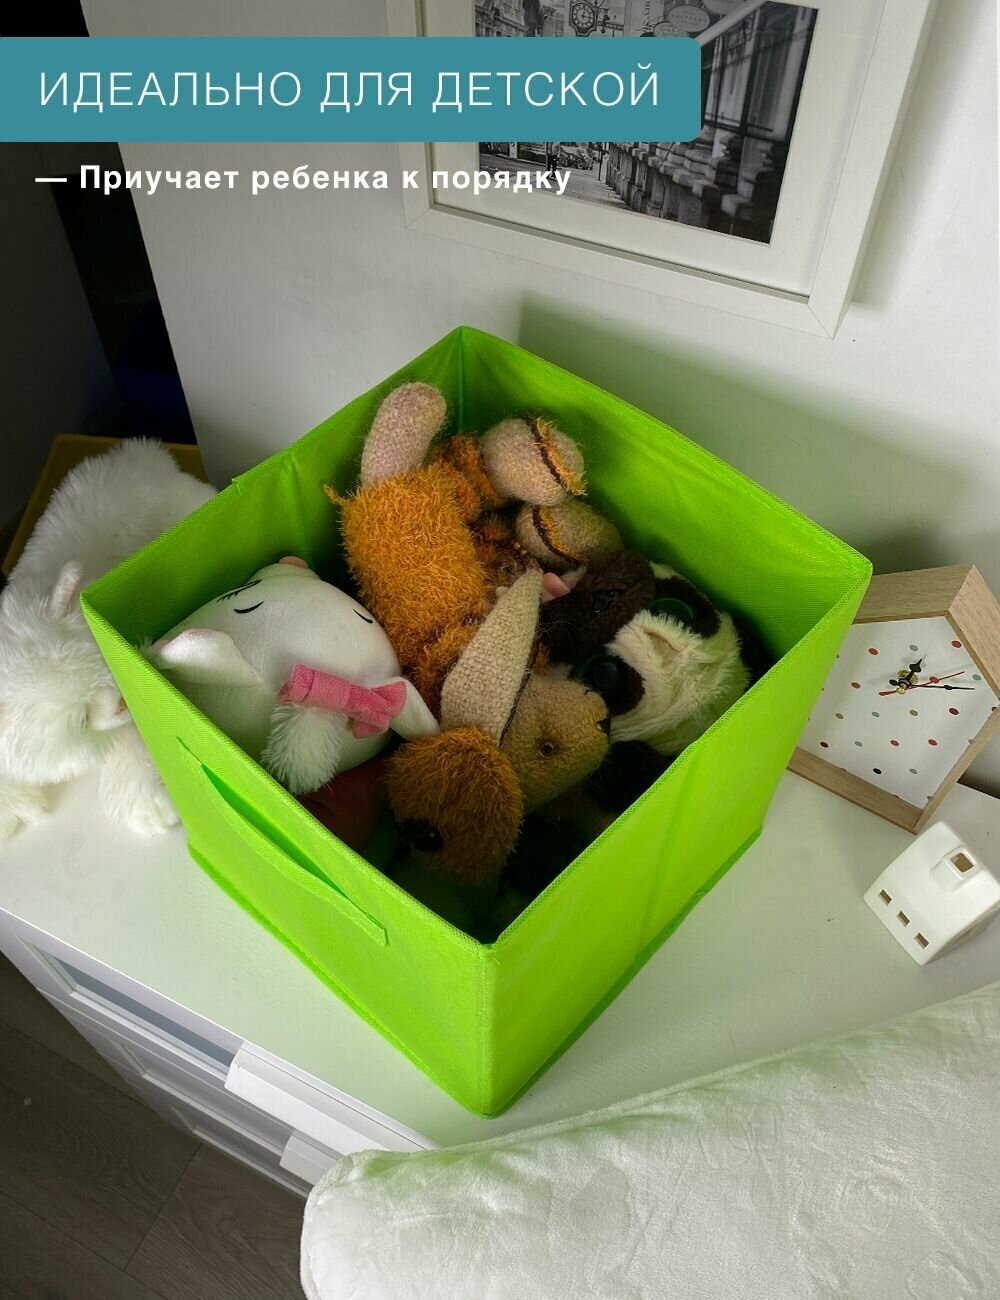 Короб-кубик для хранения вещей, игрушек и белья гелеос КУБ 33-3 (30х30х30см) салатовый, для дома, дачи и офиса - фотография № 8